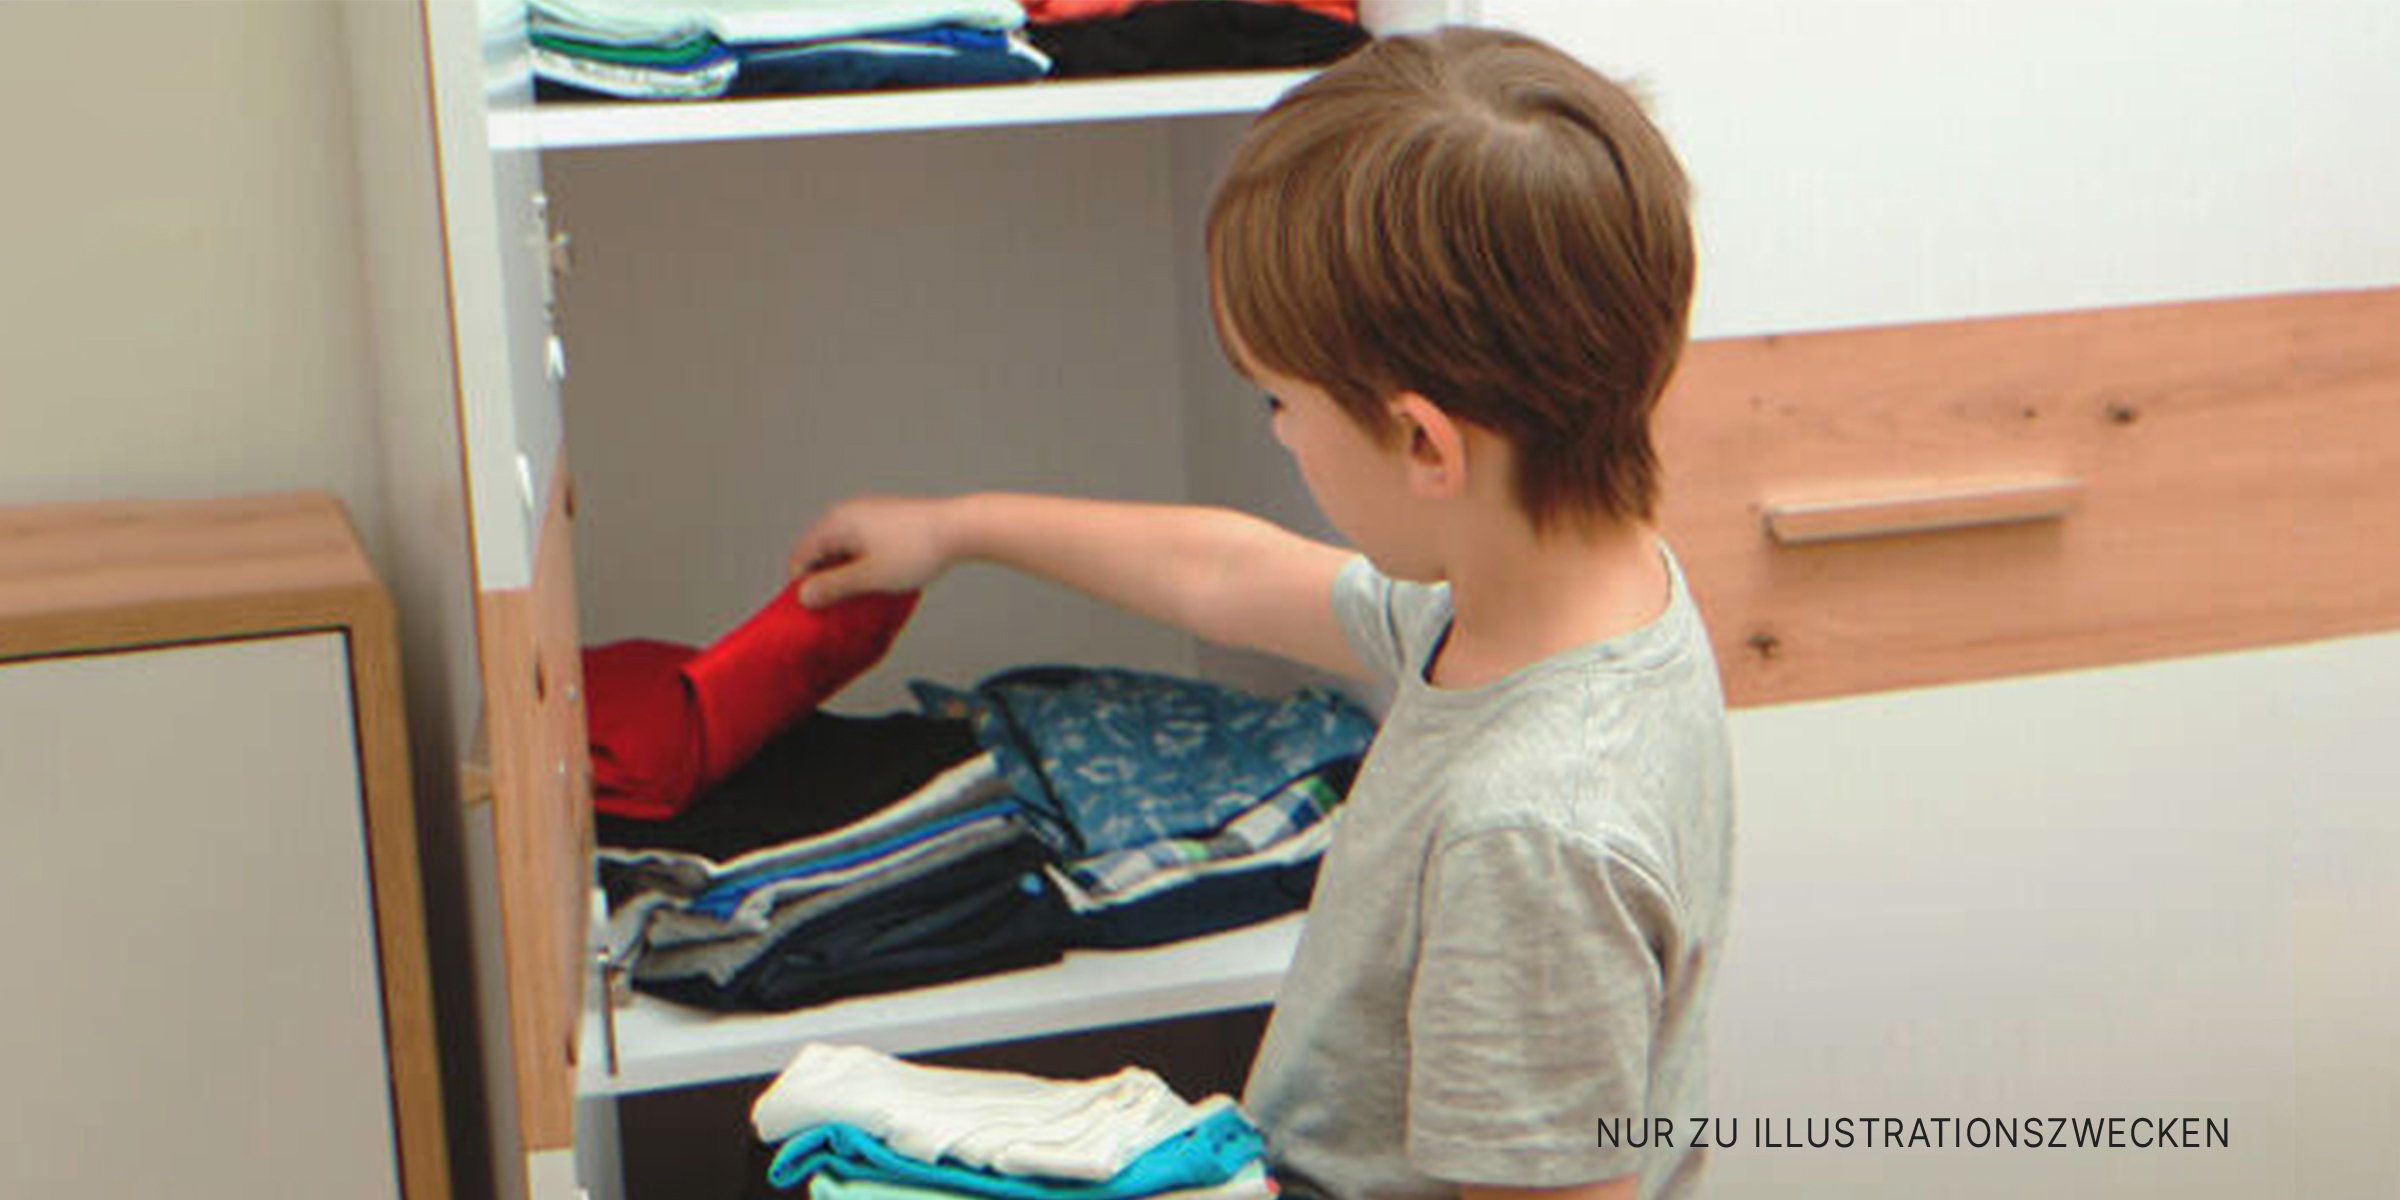 Junge schaut in den Kleiderschrank | Quelle: Shutterstock